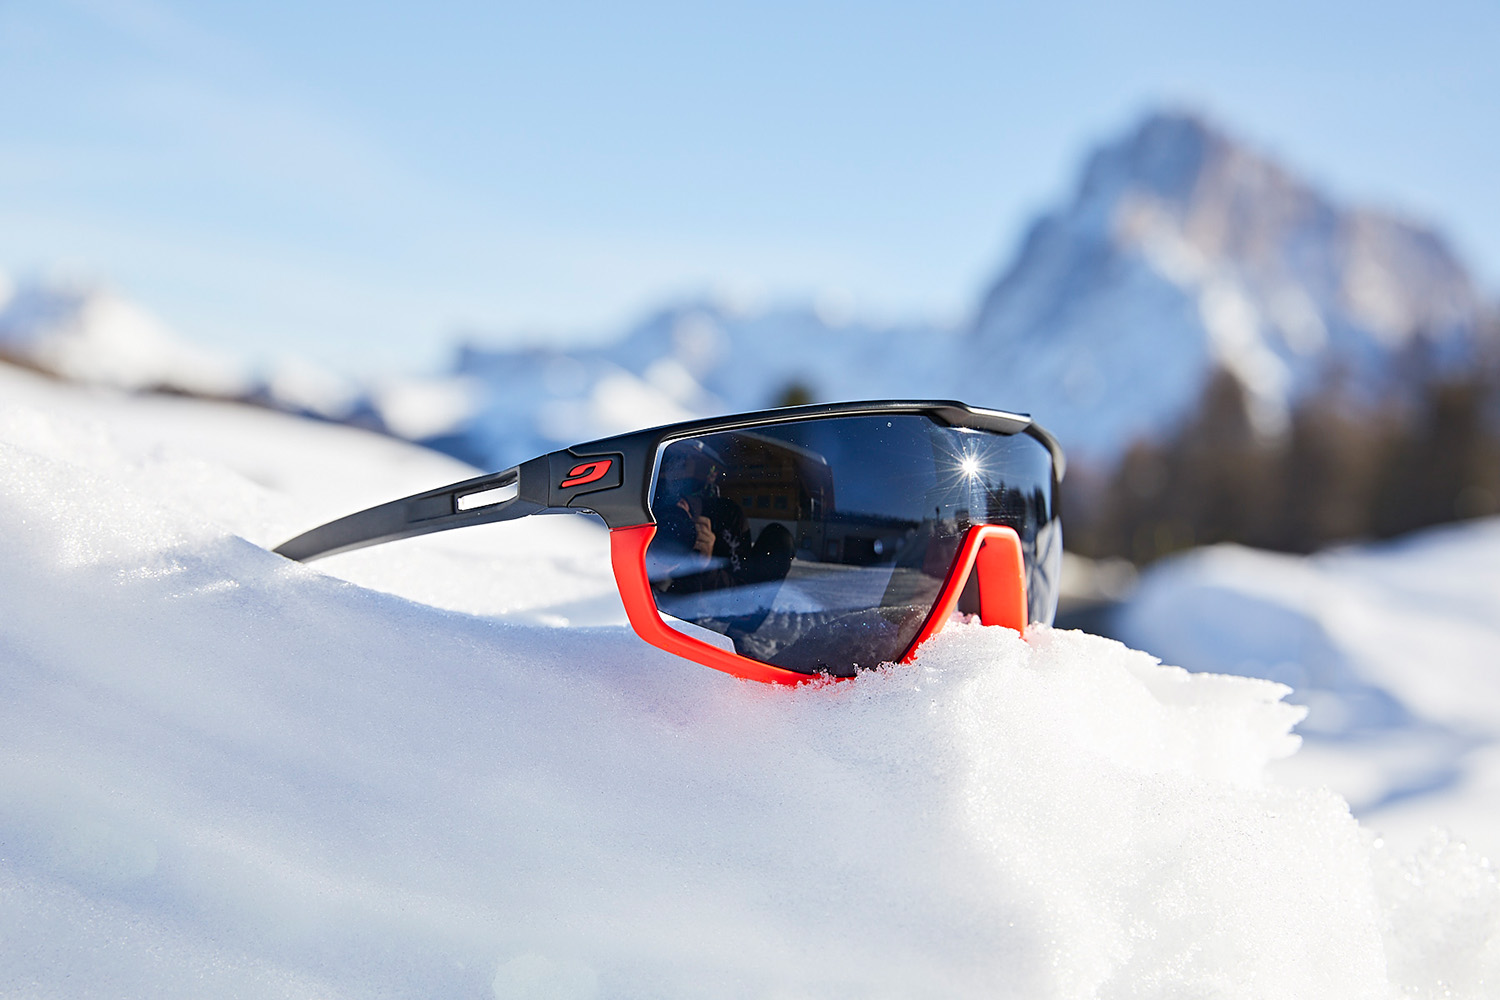 vers Helm jogger Test der Julbo Rush: Eine Sportbrille, wie maßgeschneidert für Skilanglauf  - xc-ski.de Langlauf